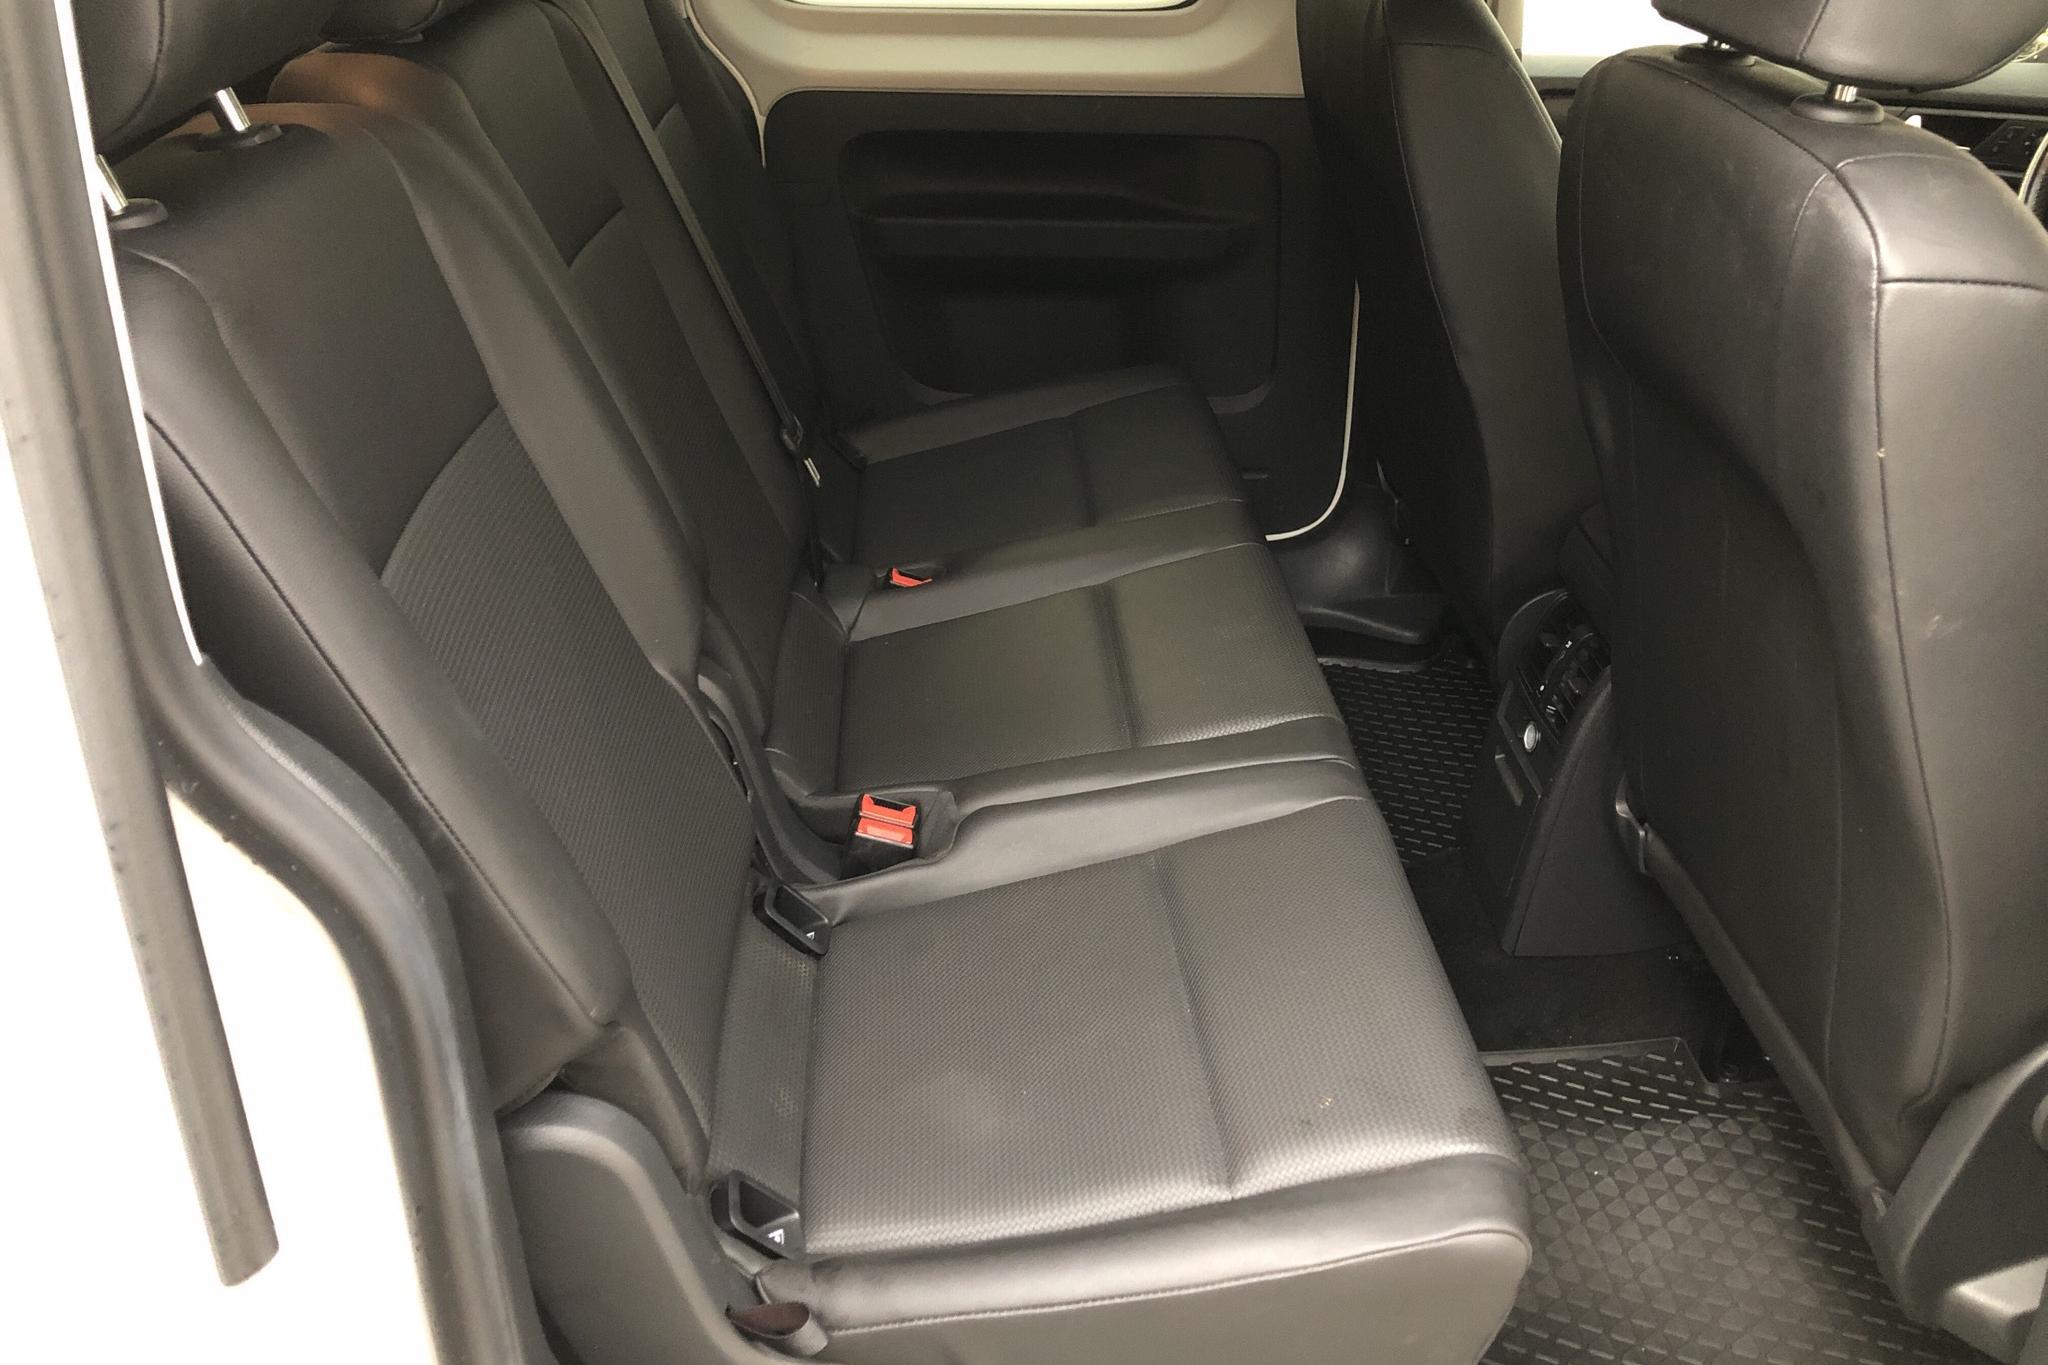 VW Caddy MPV Maxi 2.0 TDI (102hk) - 14 951 mil - Automat - vit - 2018